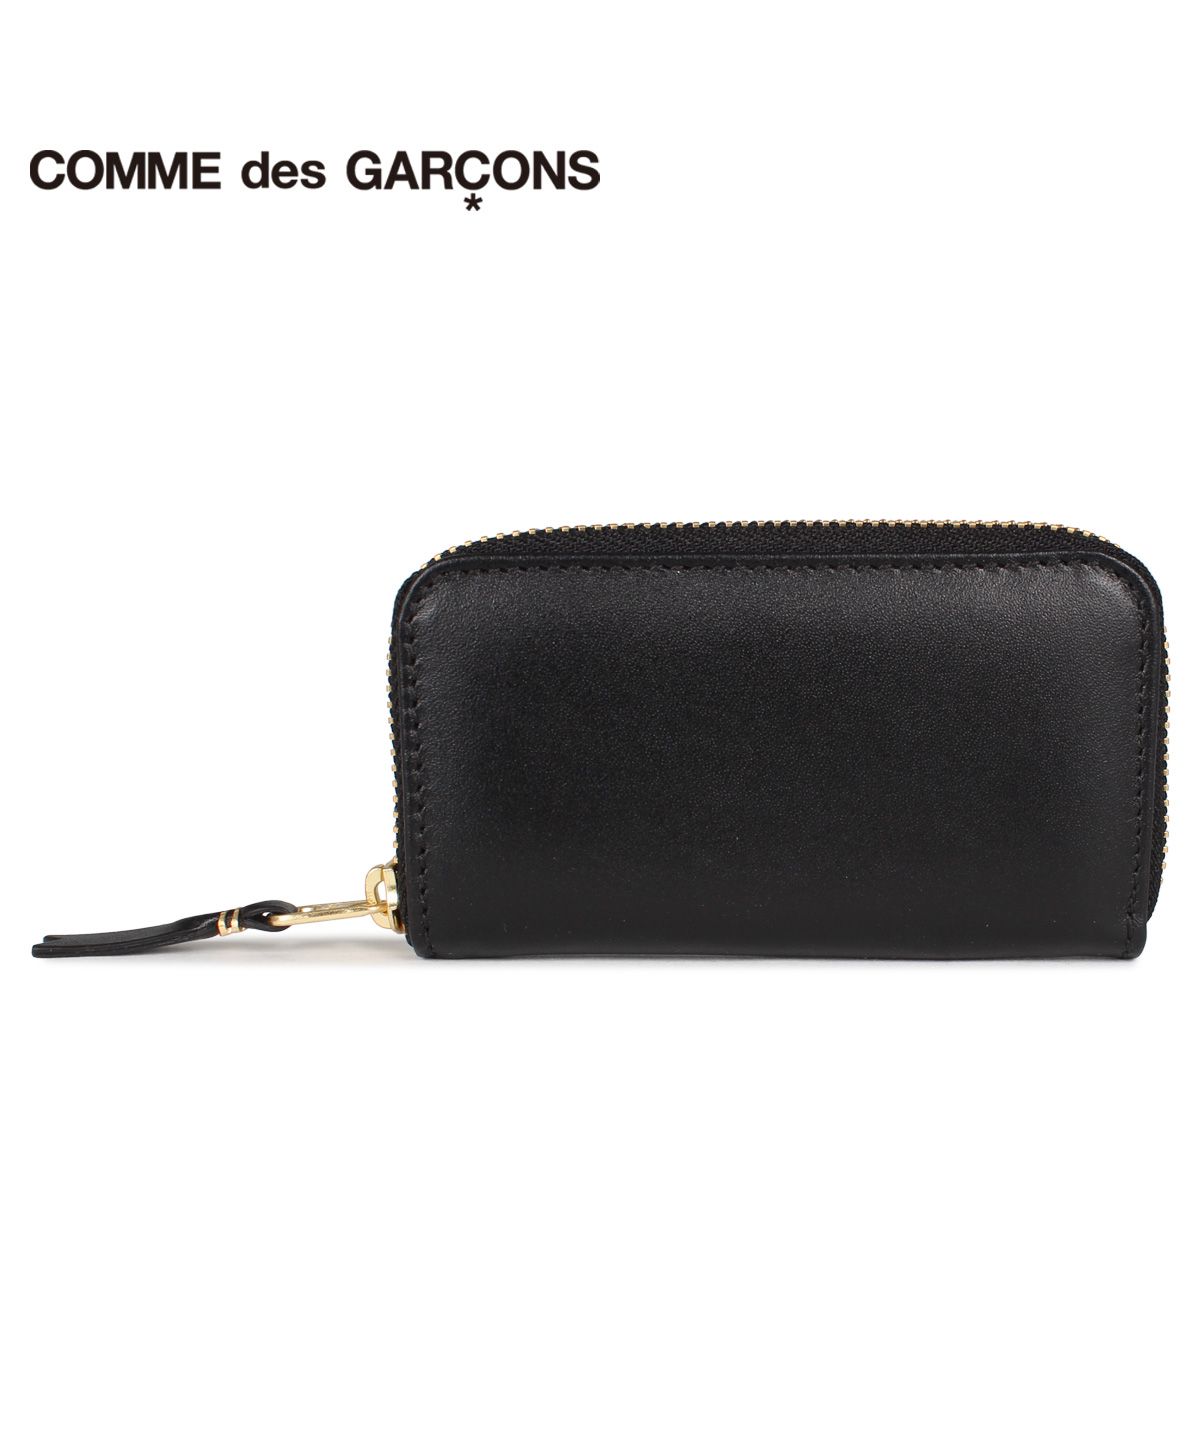 コムデギャルソン COMME des GARCONS コインケース